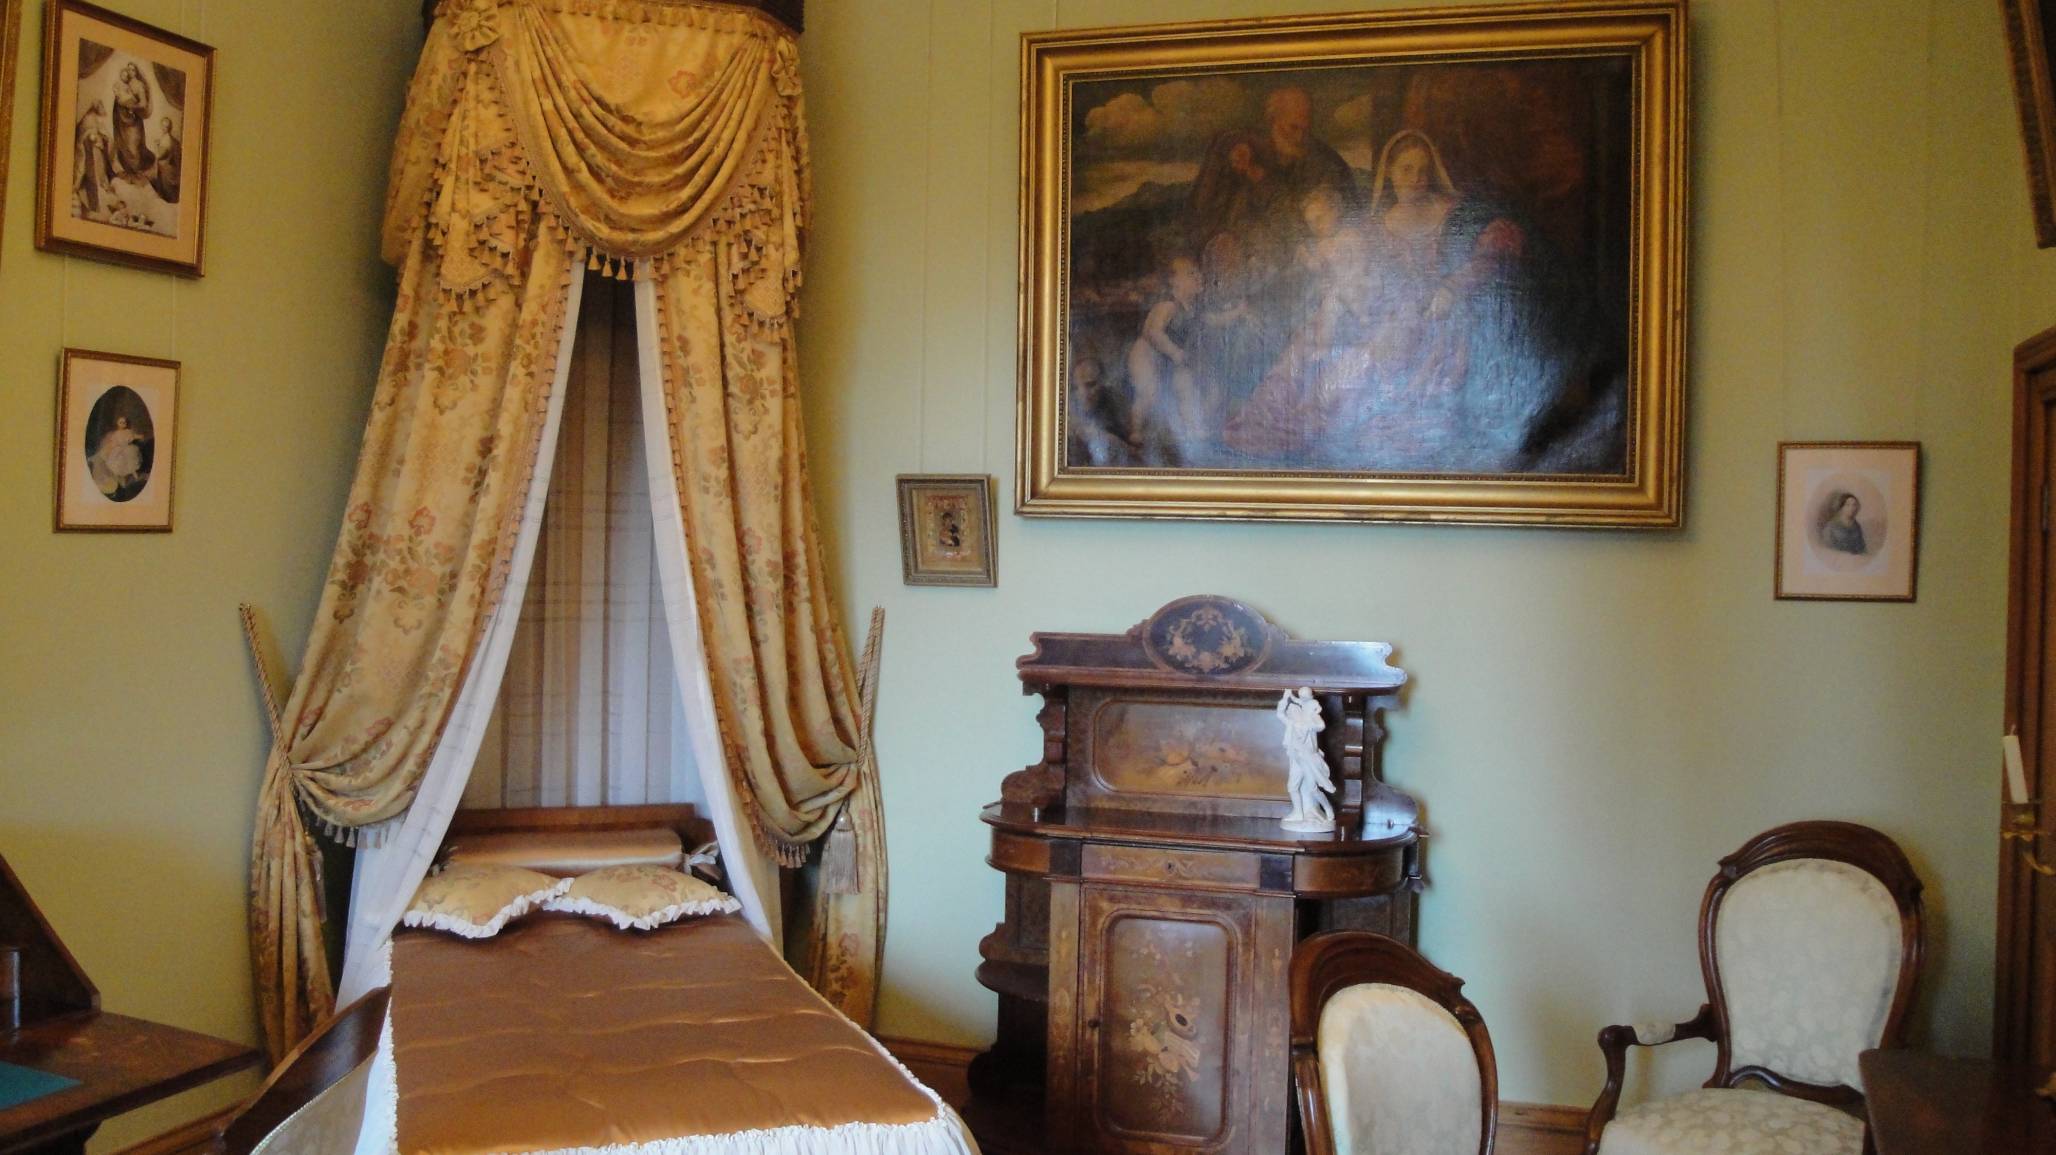 Воронцовский дворец ситцевая комната